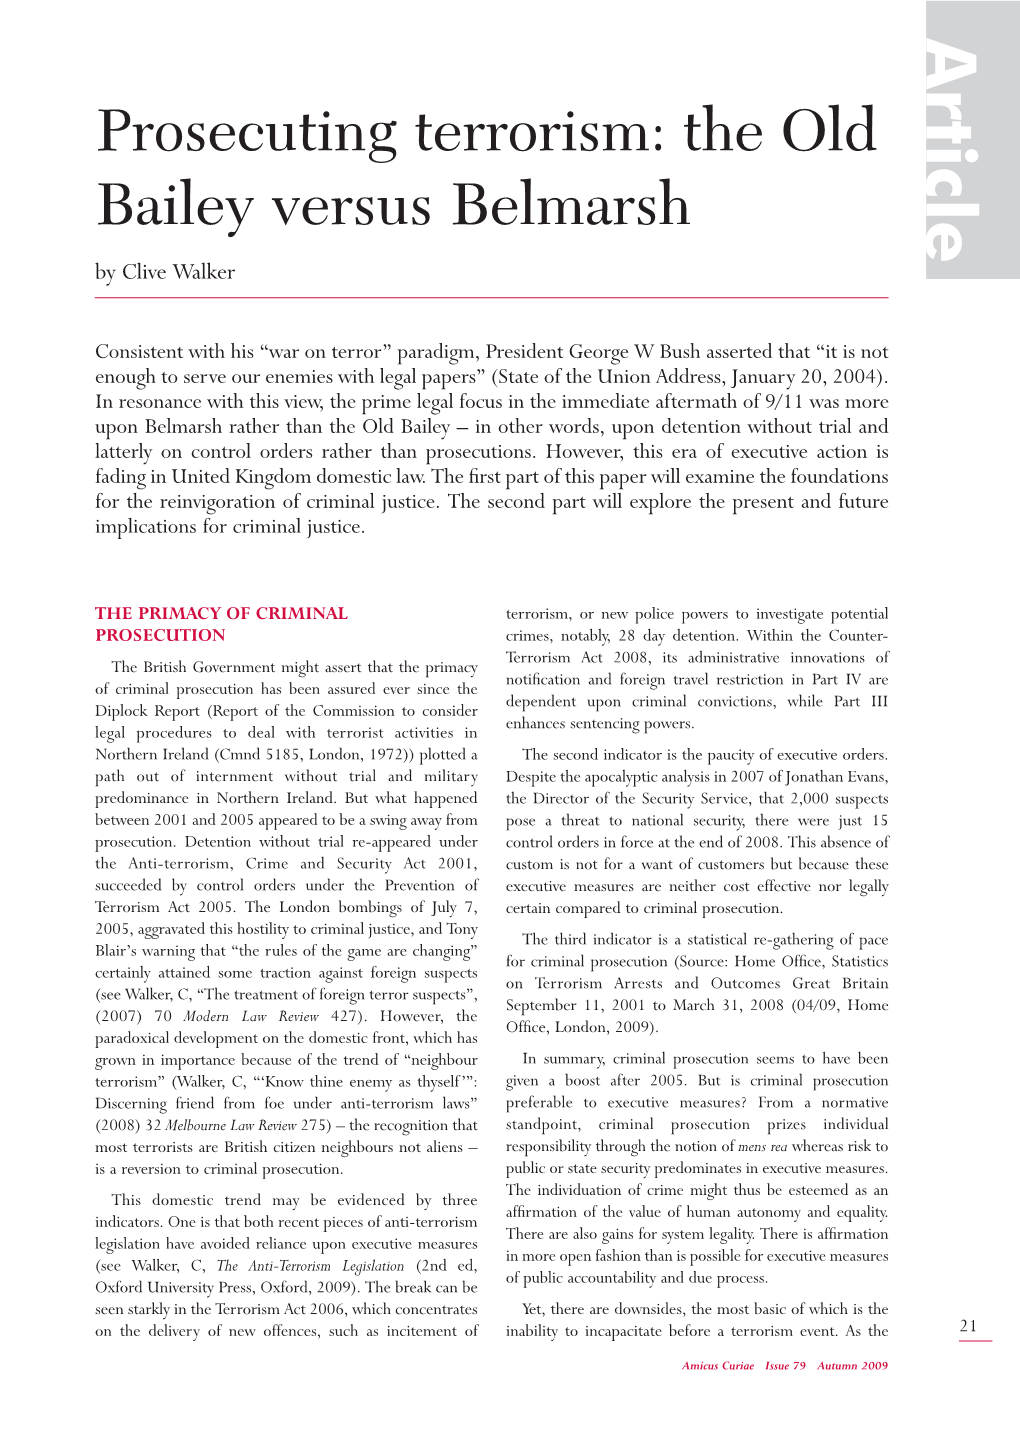 Prosecuting Terrorism: the Old Bailey Versus Belmarsh by Clive Walker